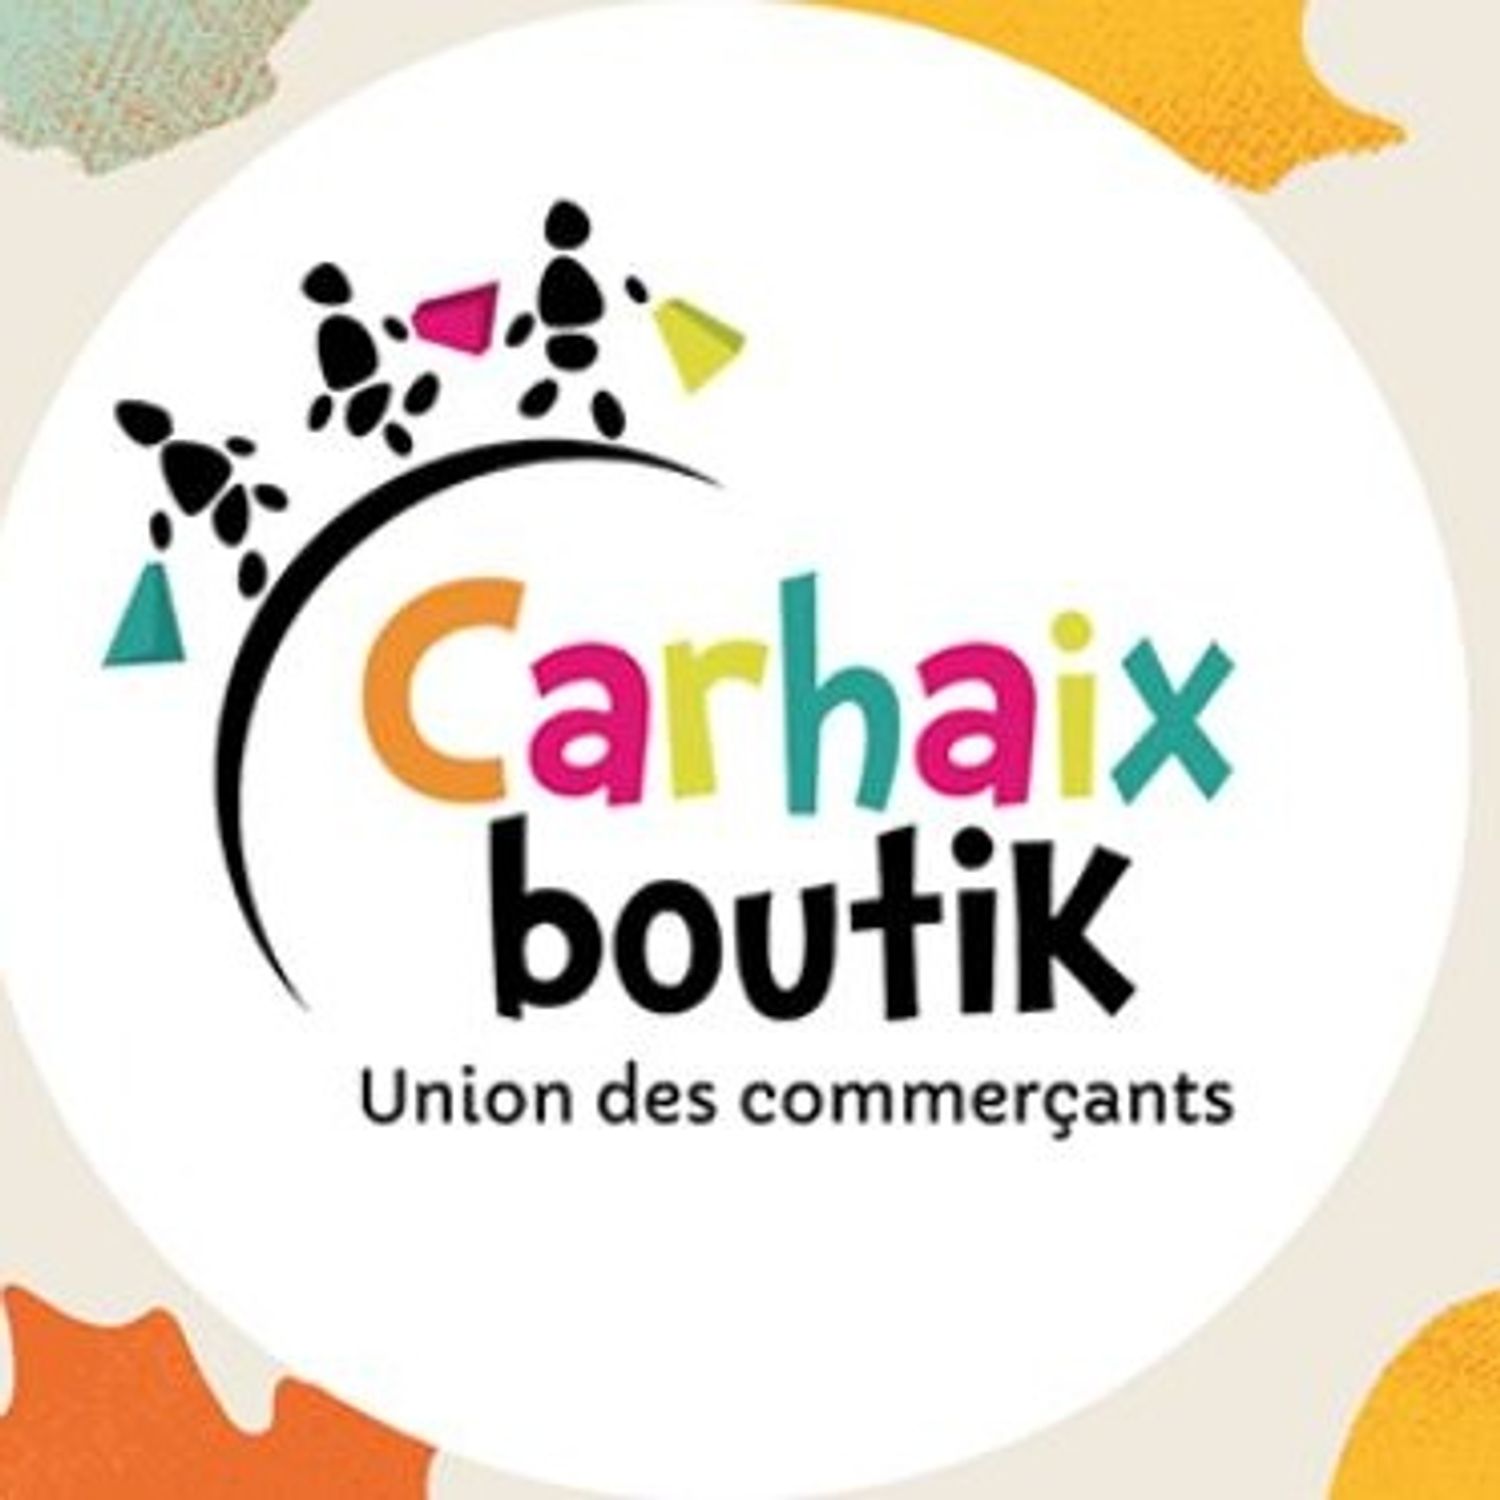 RMN Fest de Carhaix: gros plan sur l'association de commerçants...